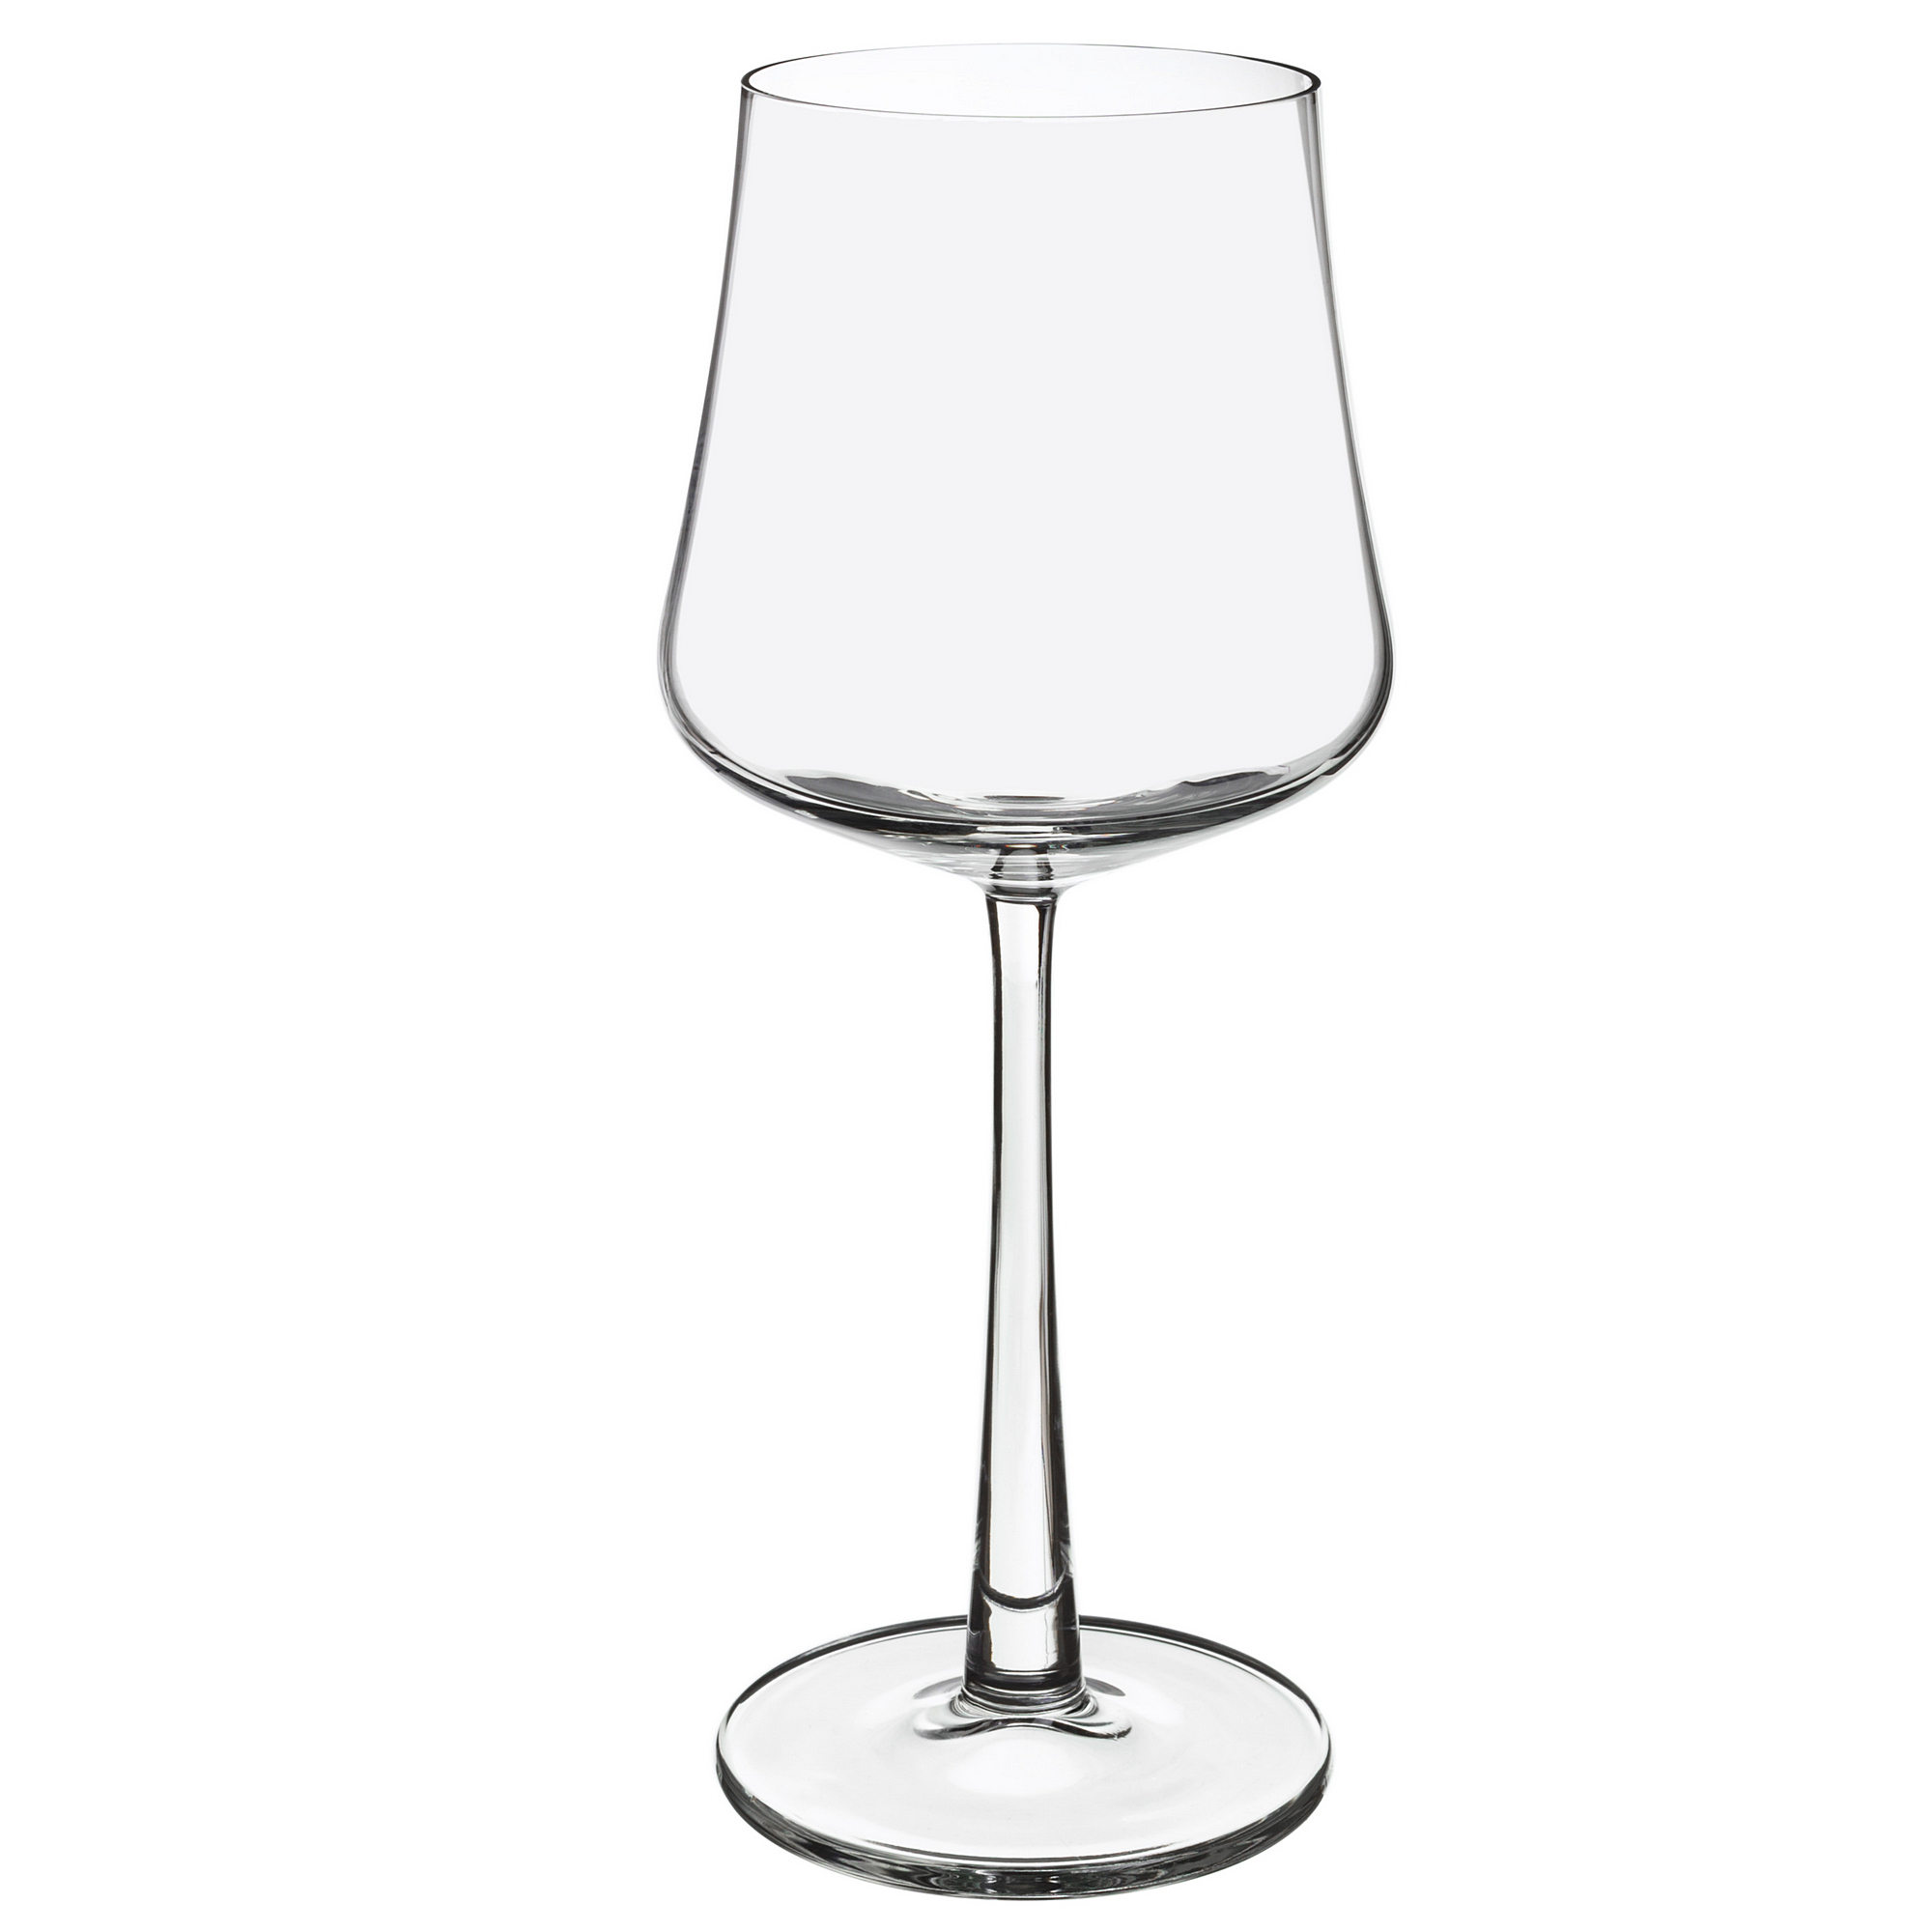 Набор бокалов для белого вина 4шт 290мл Royal leerdam novum 383522 наборы для вина мини